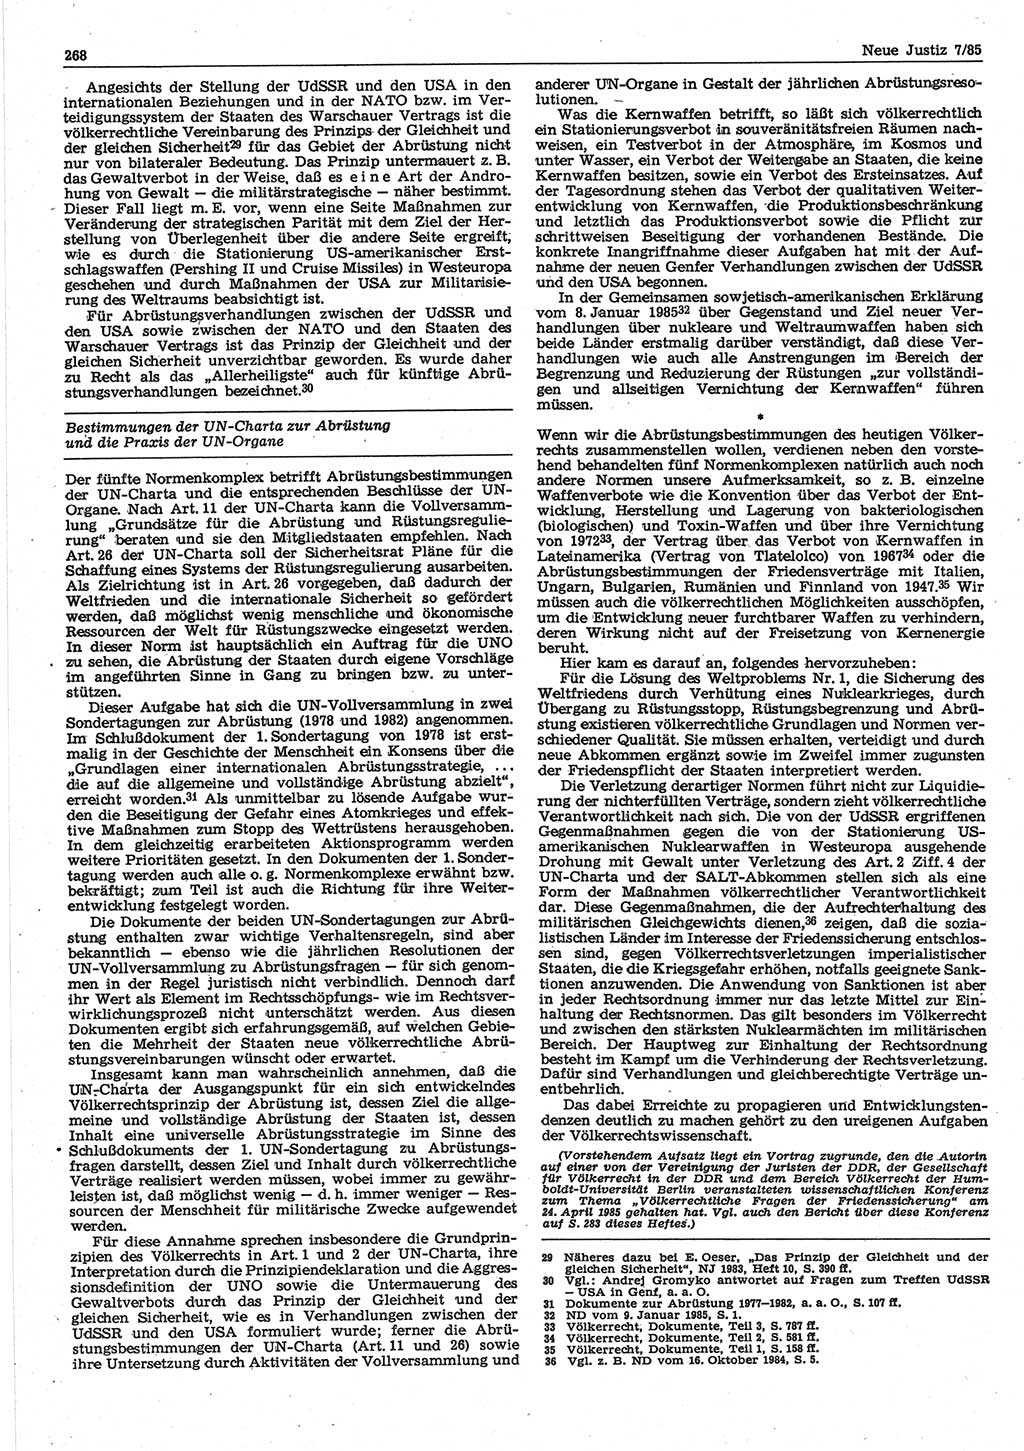 Neue Justiz (NJ), Zeitschrift für sozialistisches Recht und Gesetzlichkeit [Deutsche Demokratische Republik (DDR)], 39. Jahrgang 1985, Seite 268 (NJ DDR 1985, S. 268)